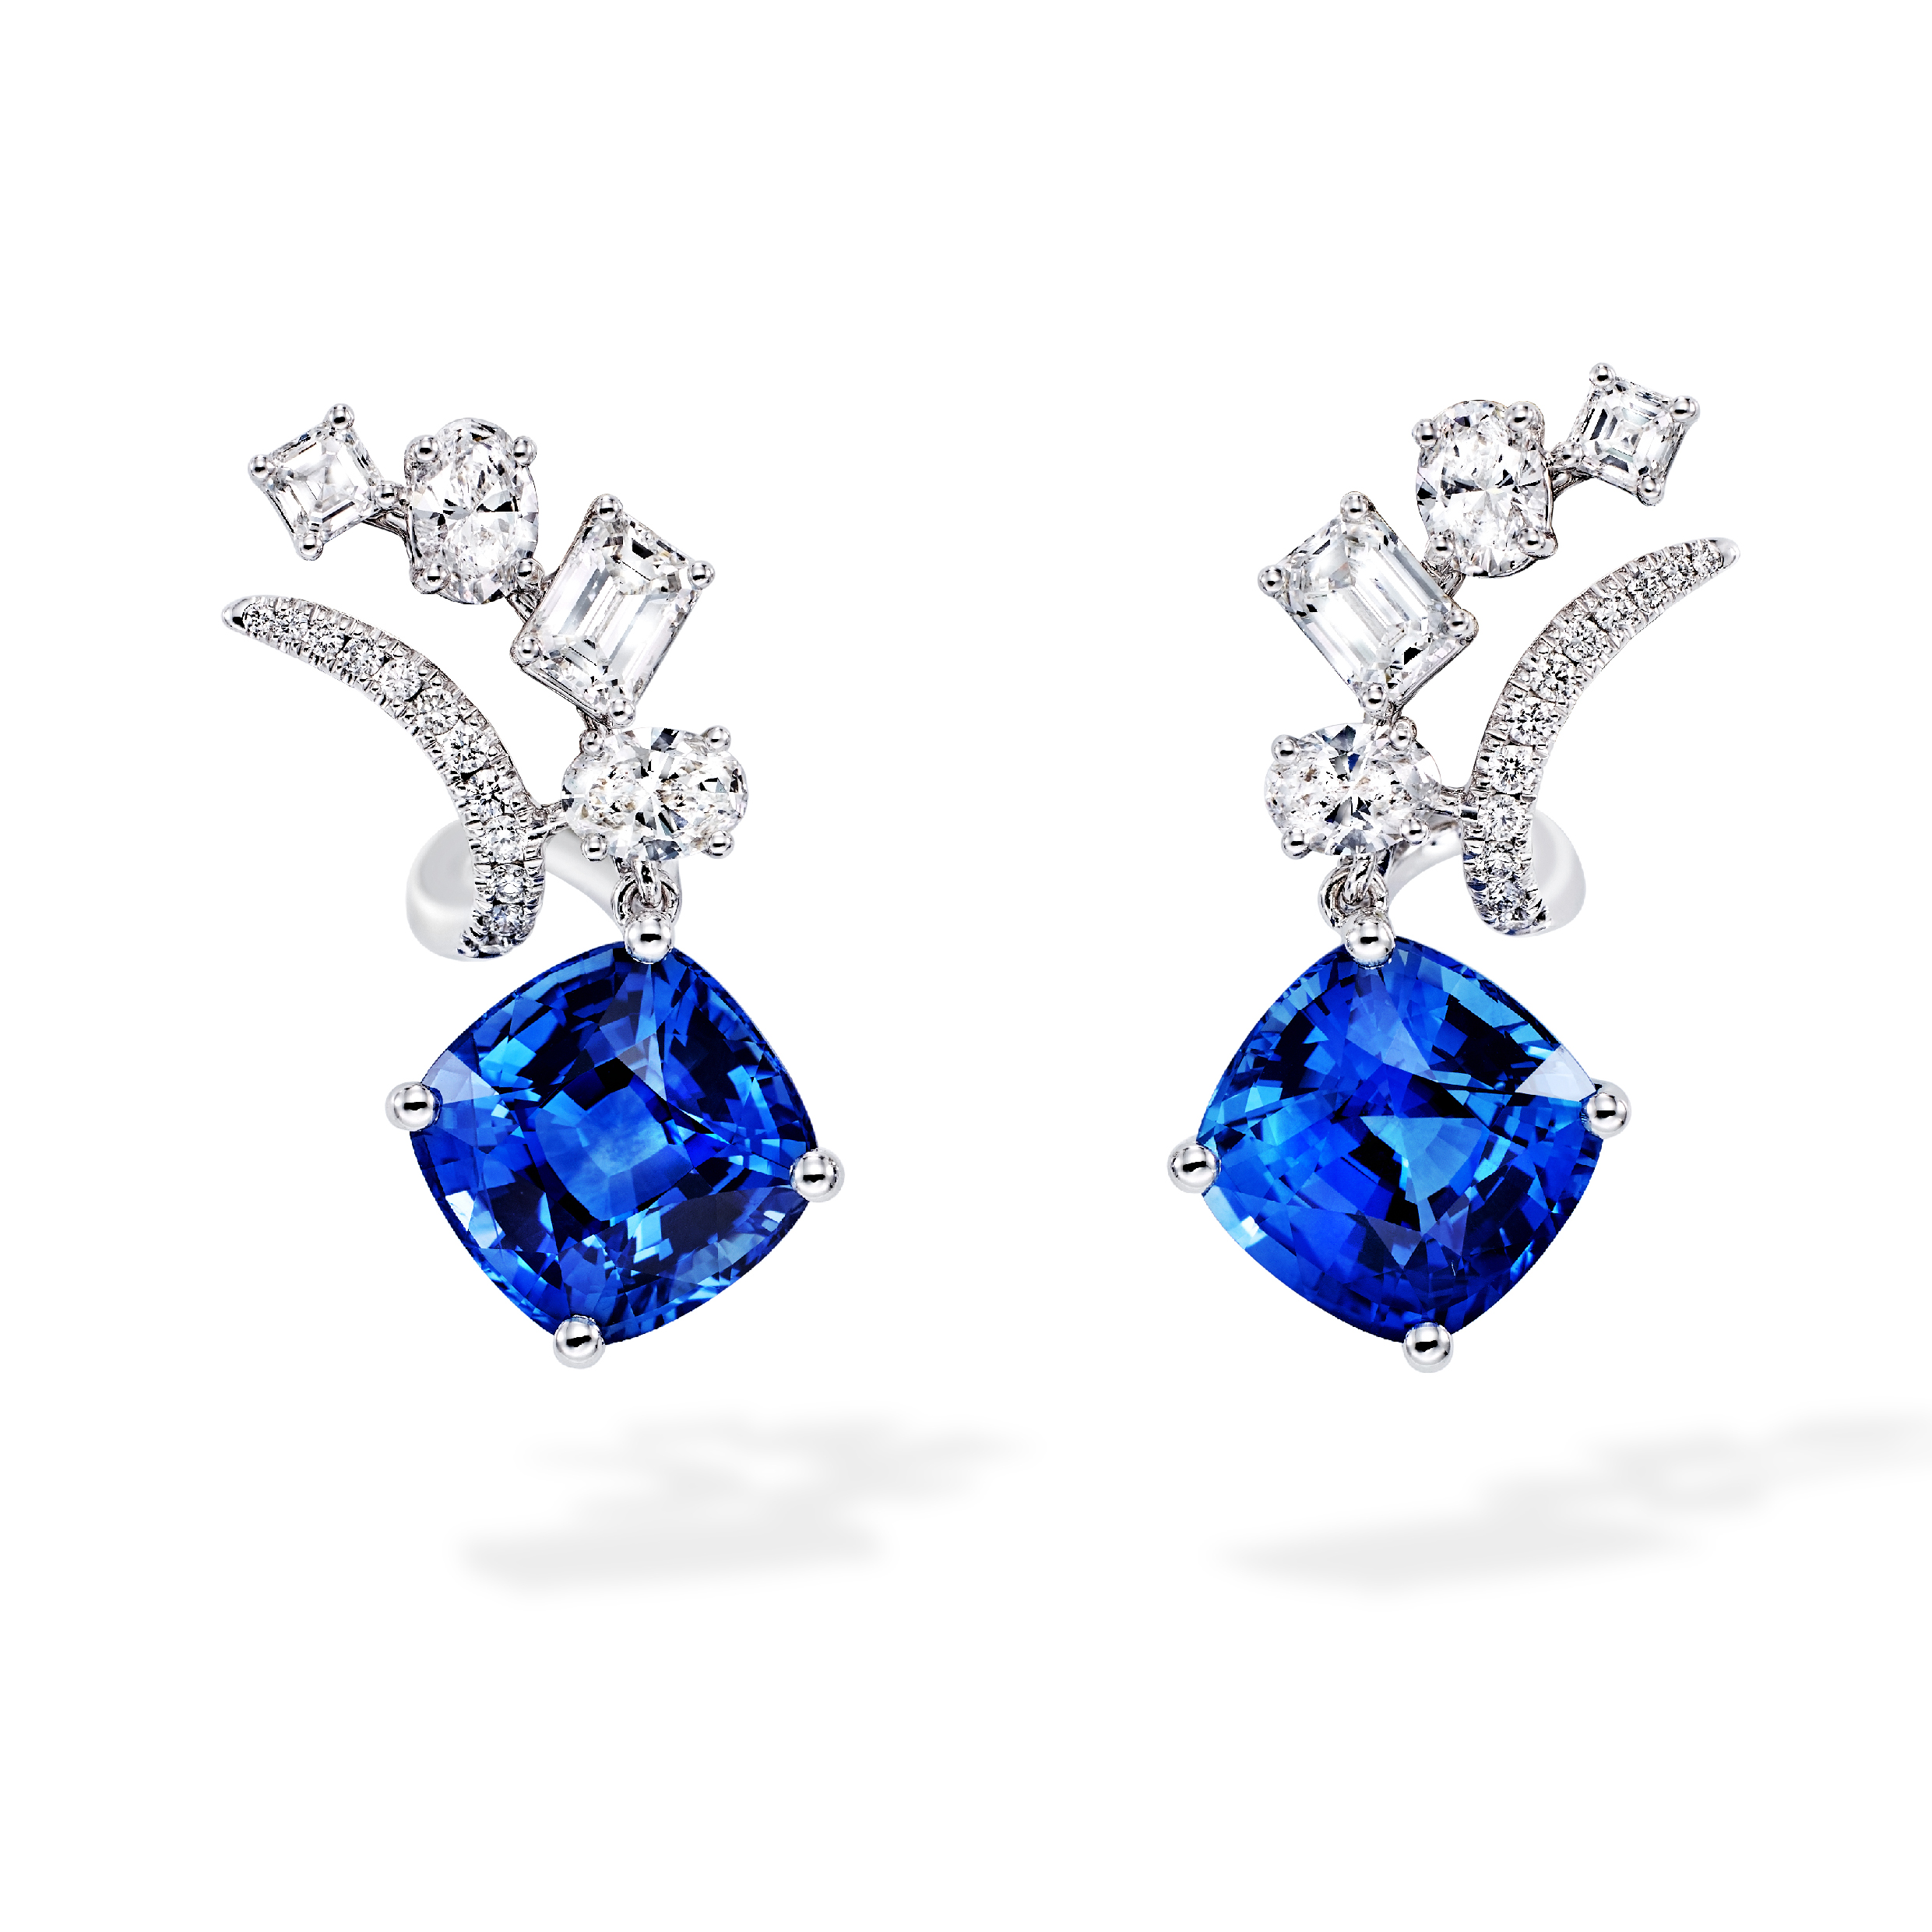 Blue sapphire earrings 1